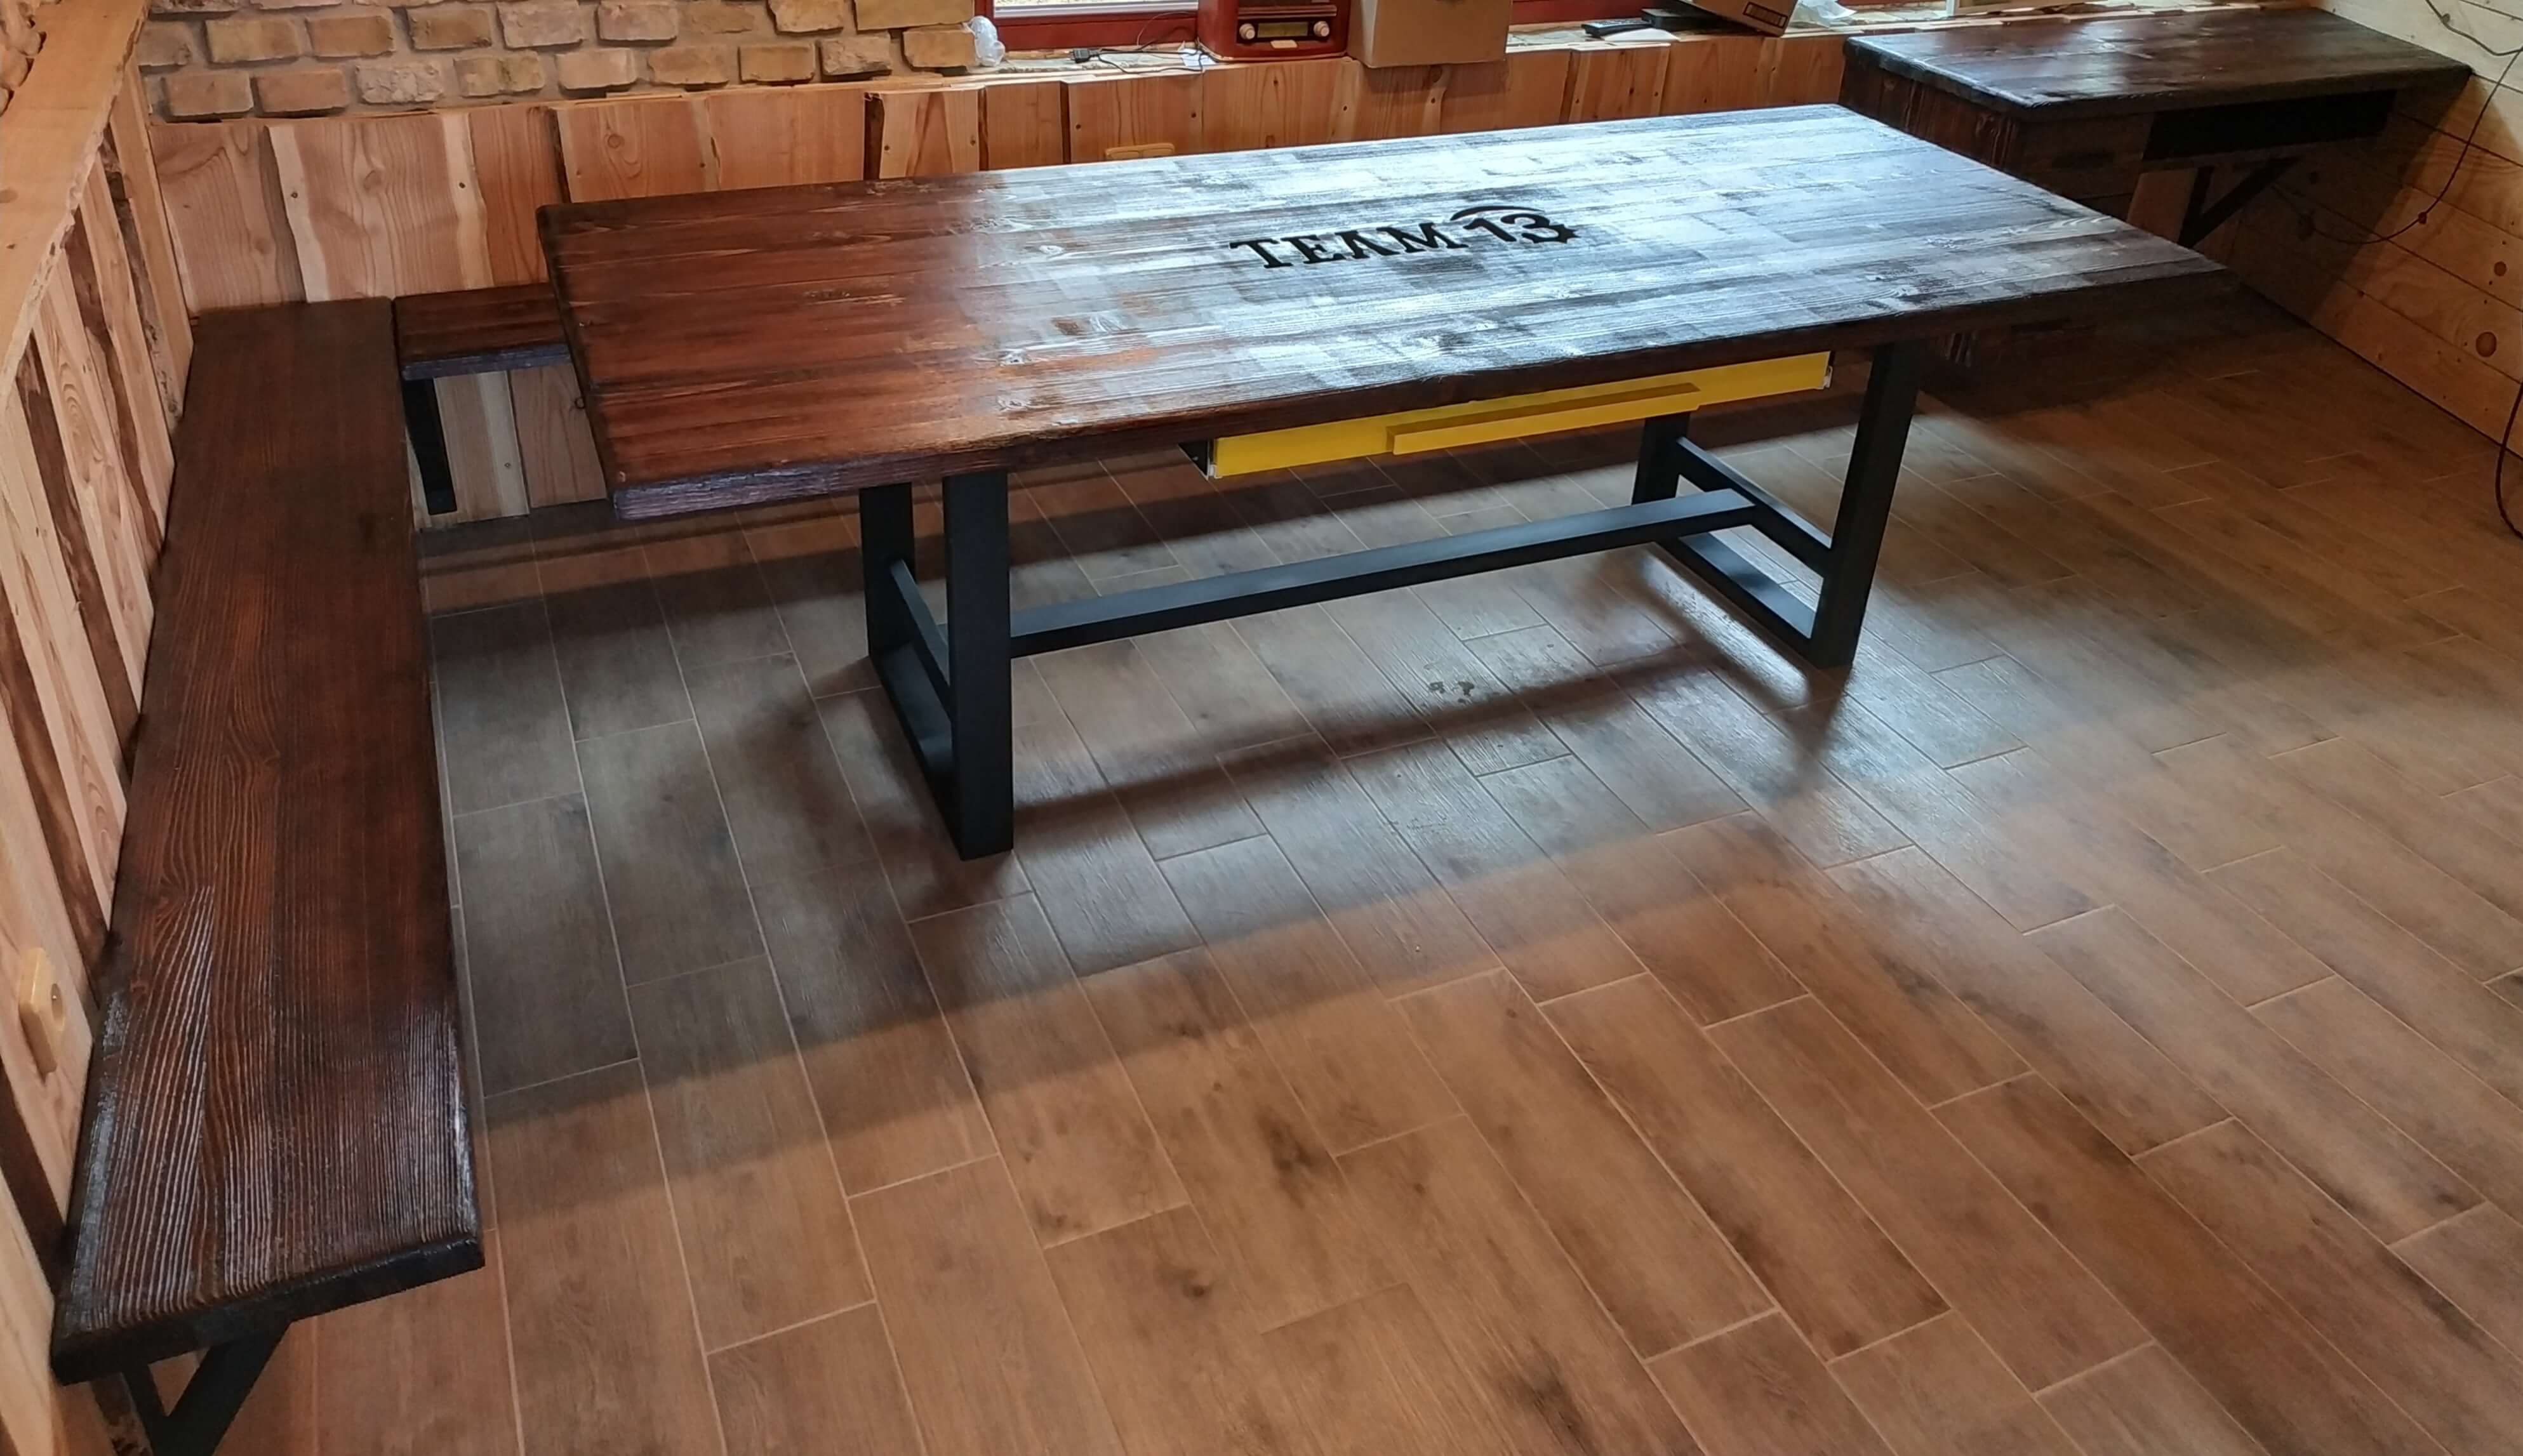 Drevená lavica na konzolách Industriálny jedálenský stôl Industrial Wooden Bench Industrial Table Industrielle Holzbank Industrietisch Banc en bois industriel Table Industrielle